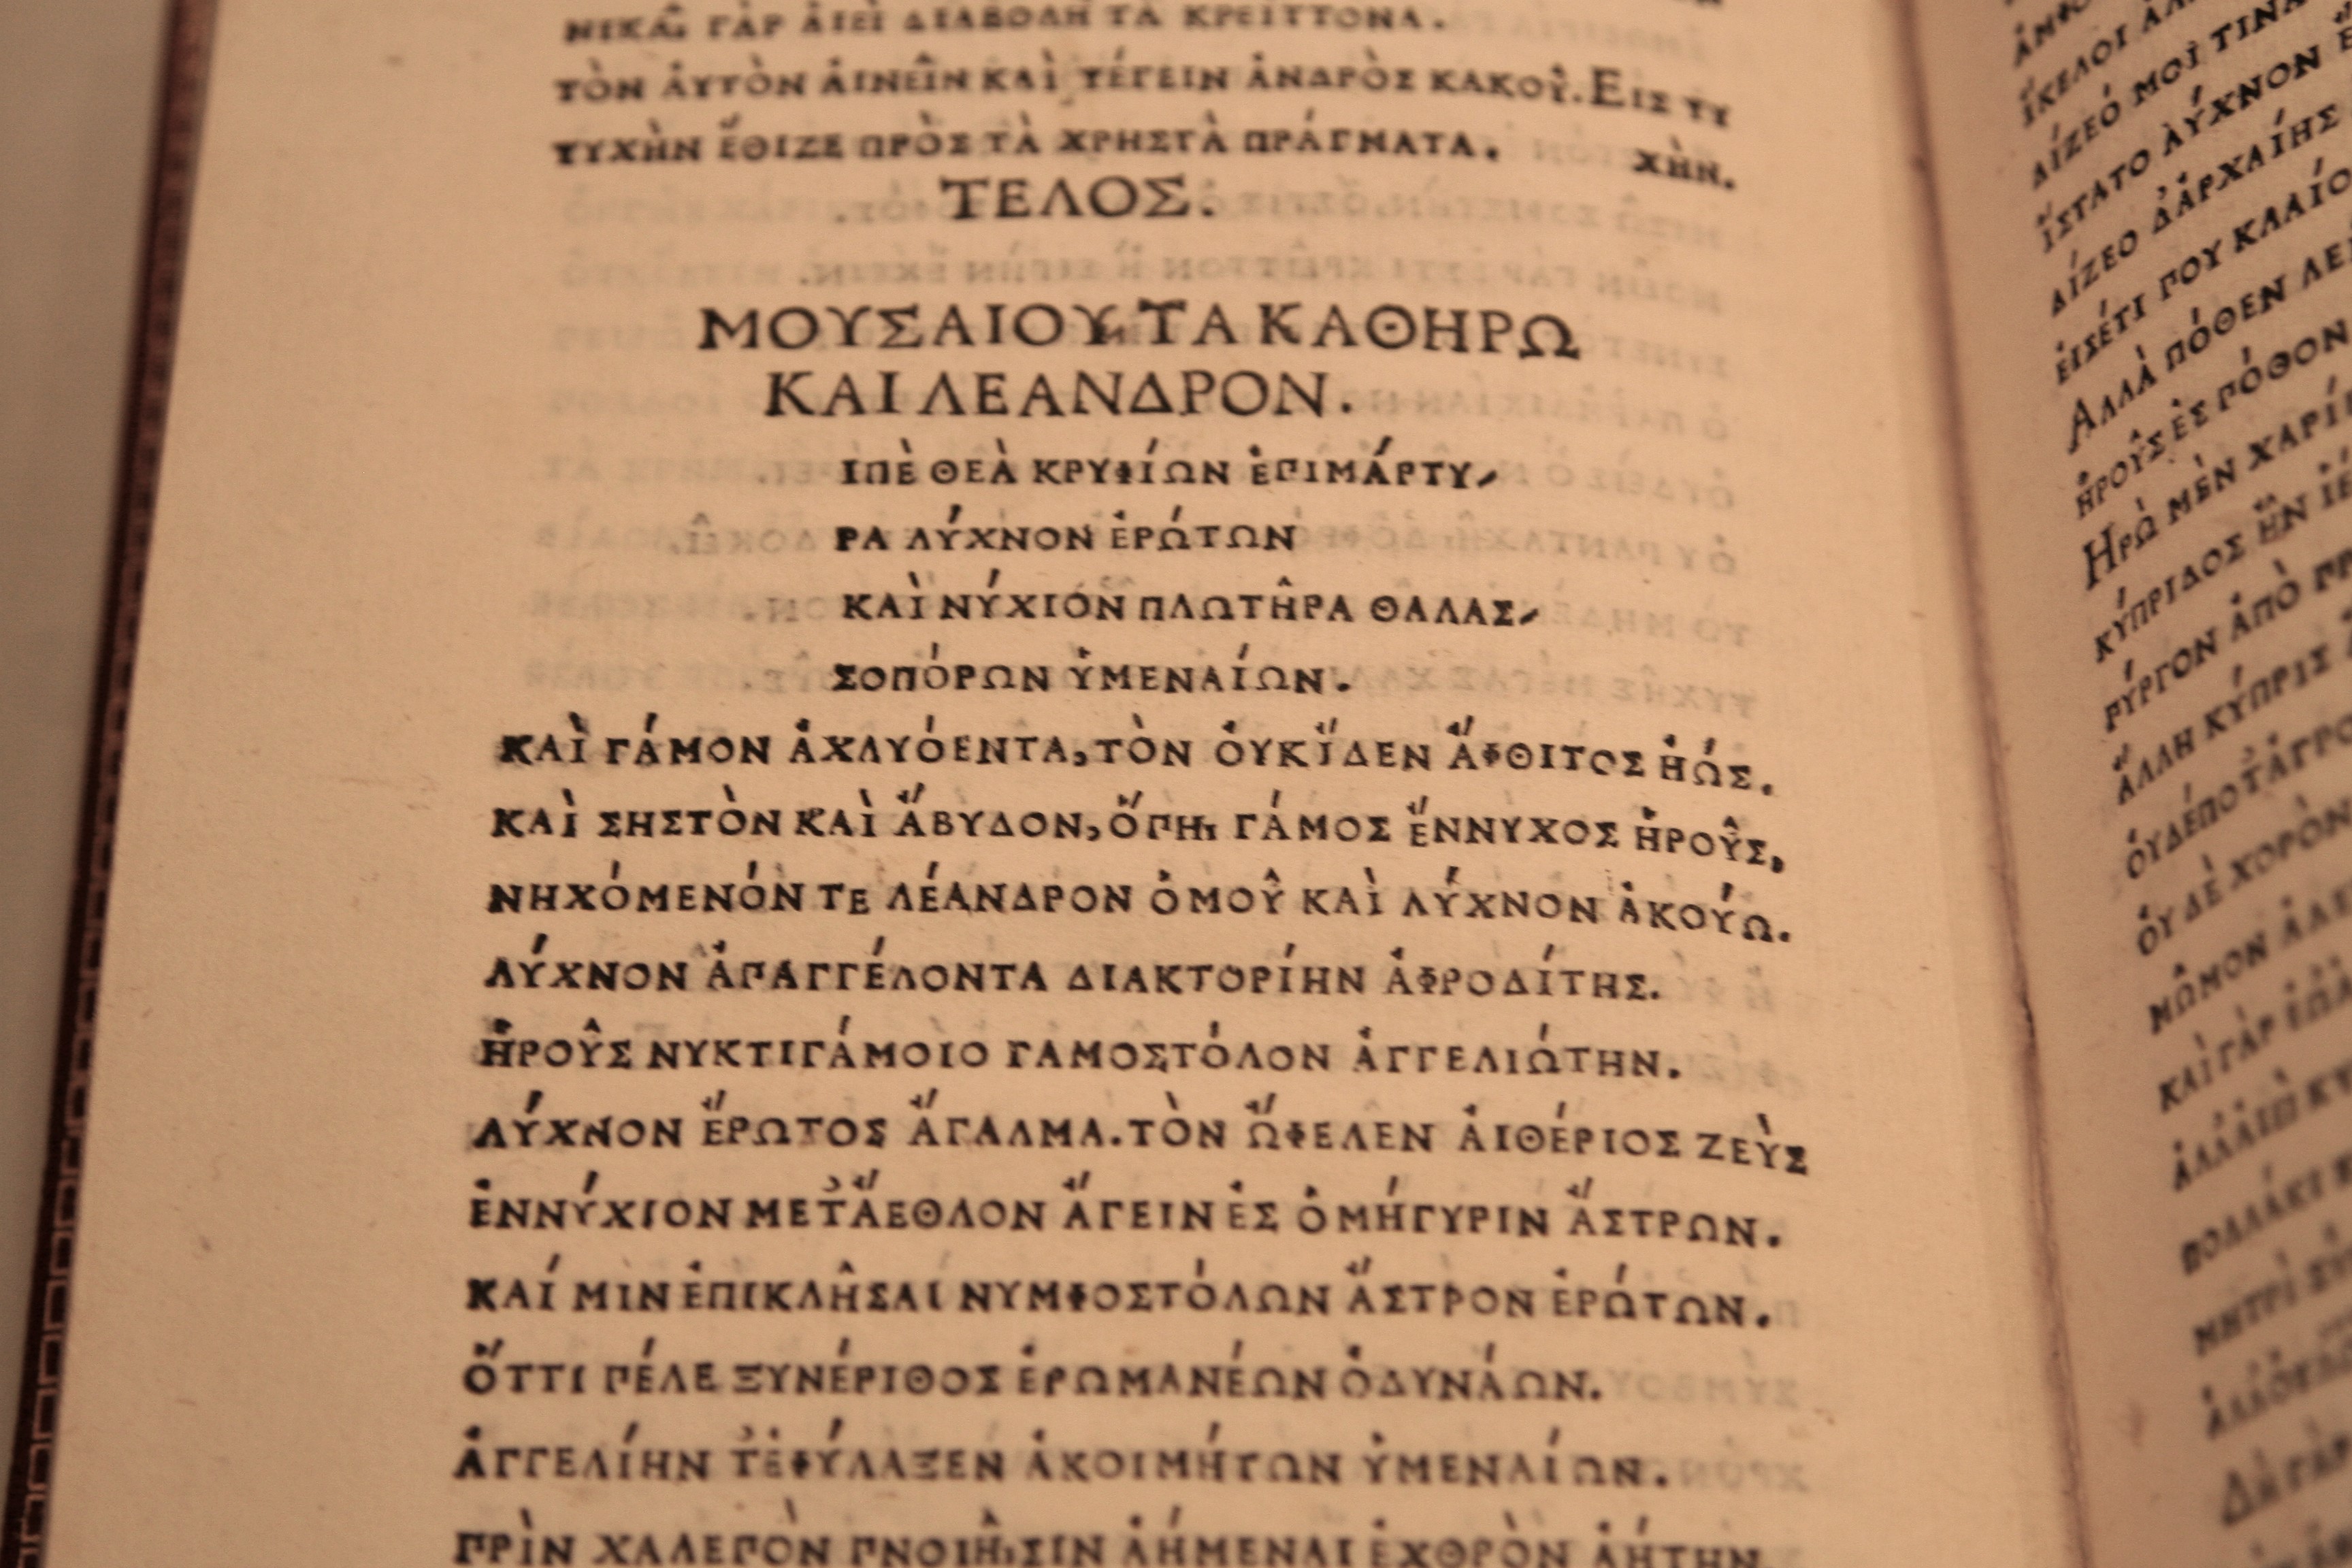 Μουσαίος, Τα καθ' Ηρώ και Λέανδρον. Φλωρεντία: Laurentius (Francisci) de Alopa, Venetus, περ. 1494. Πρώτη έκδοση, υπό την επιμέλεια του σημαντικού λόγιου Ιανού Λάσκαρη, ο οποίος σχεδίασε και τη γραμματοσειρά που χρησιμοποιήθηκε. 